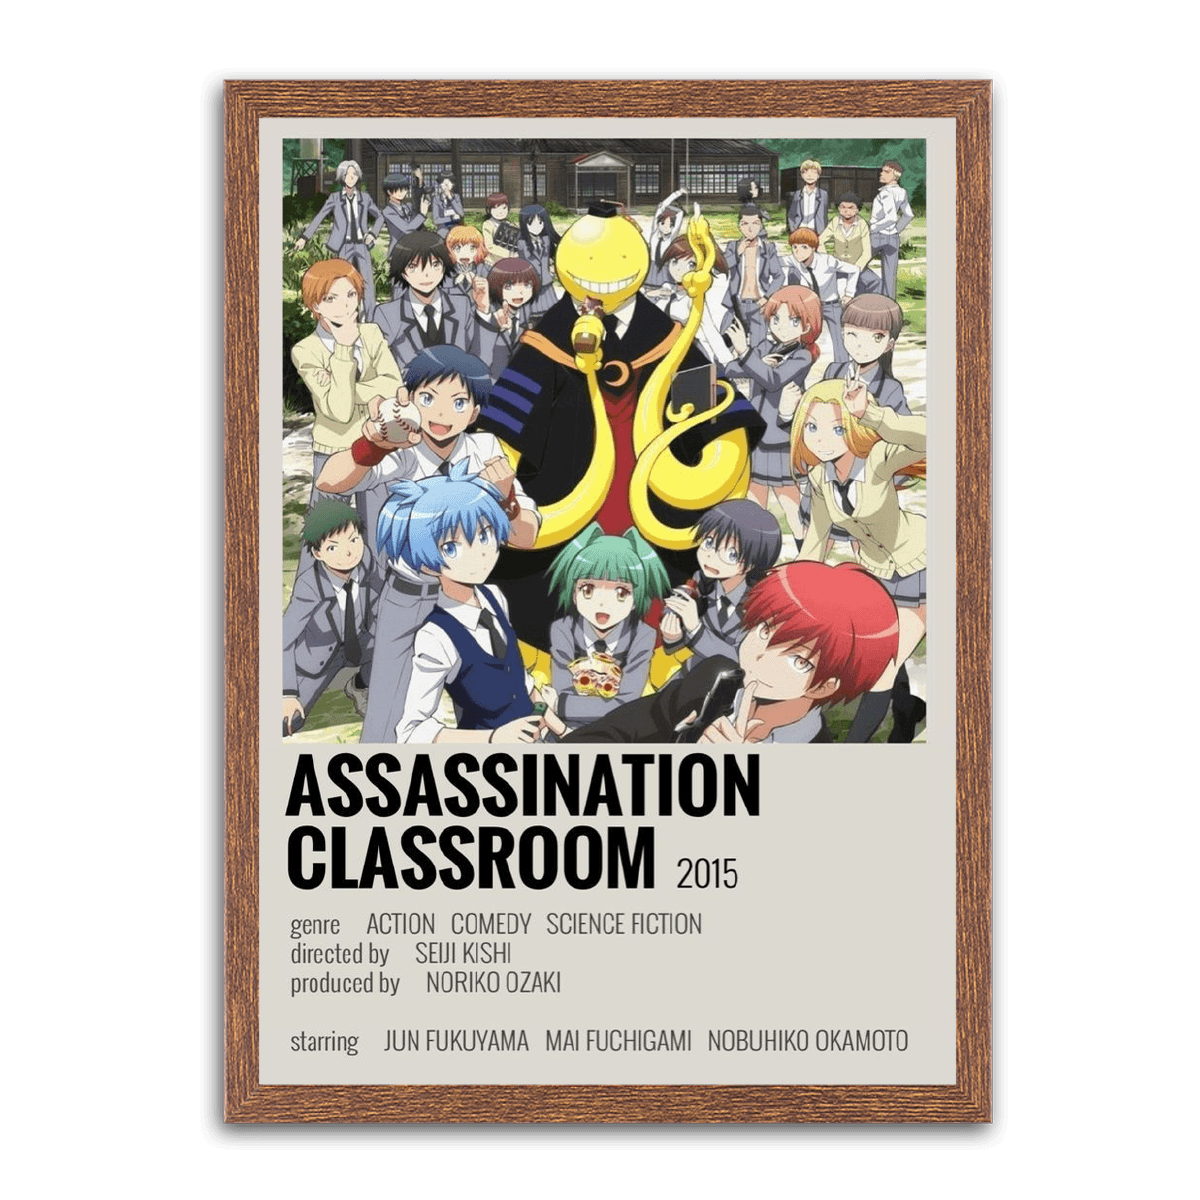 Classroom Assassination - PixMagic